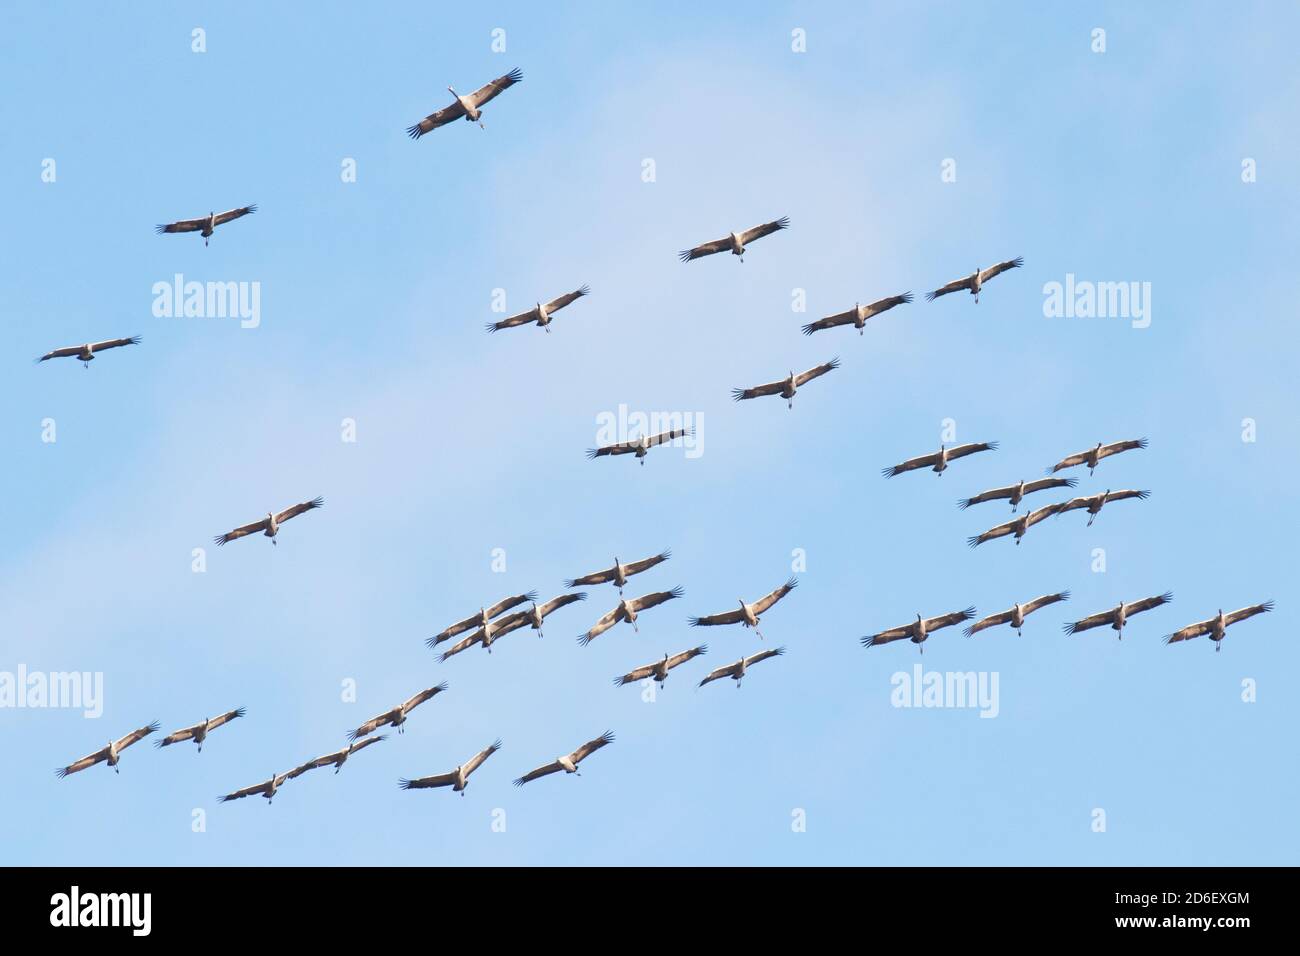 Eine große Schar gewöhnlicher Kraniche, Grus grus, die während der Frühlingsmigration in der estnischen Natur fliegen. Stockfoto